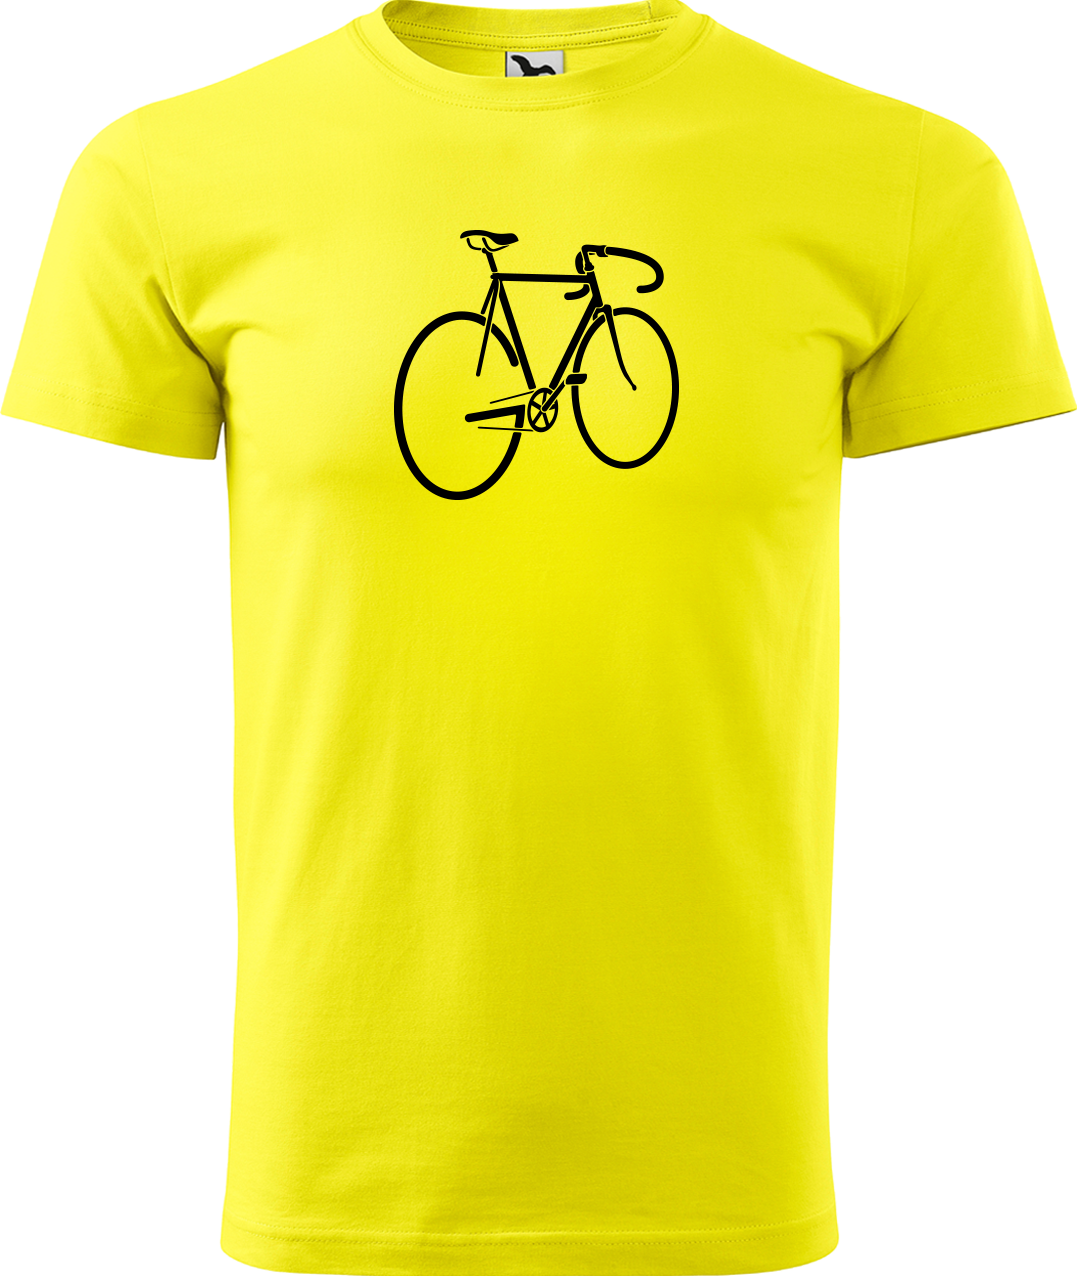 Pánské tričko s kolem - Pánské kolo Velikost: 2XL, Barva: Žlutá (04)